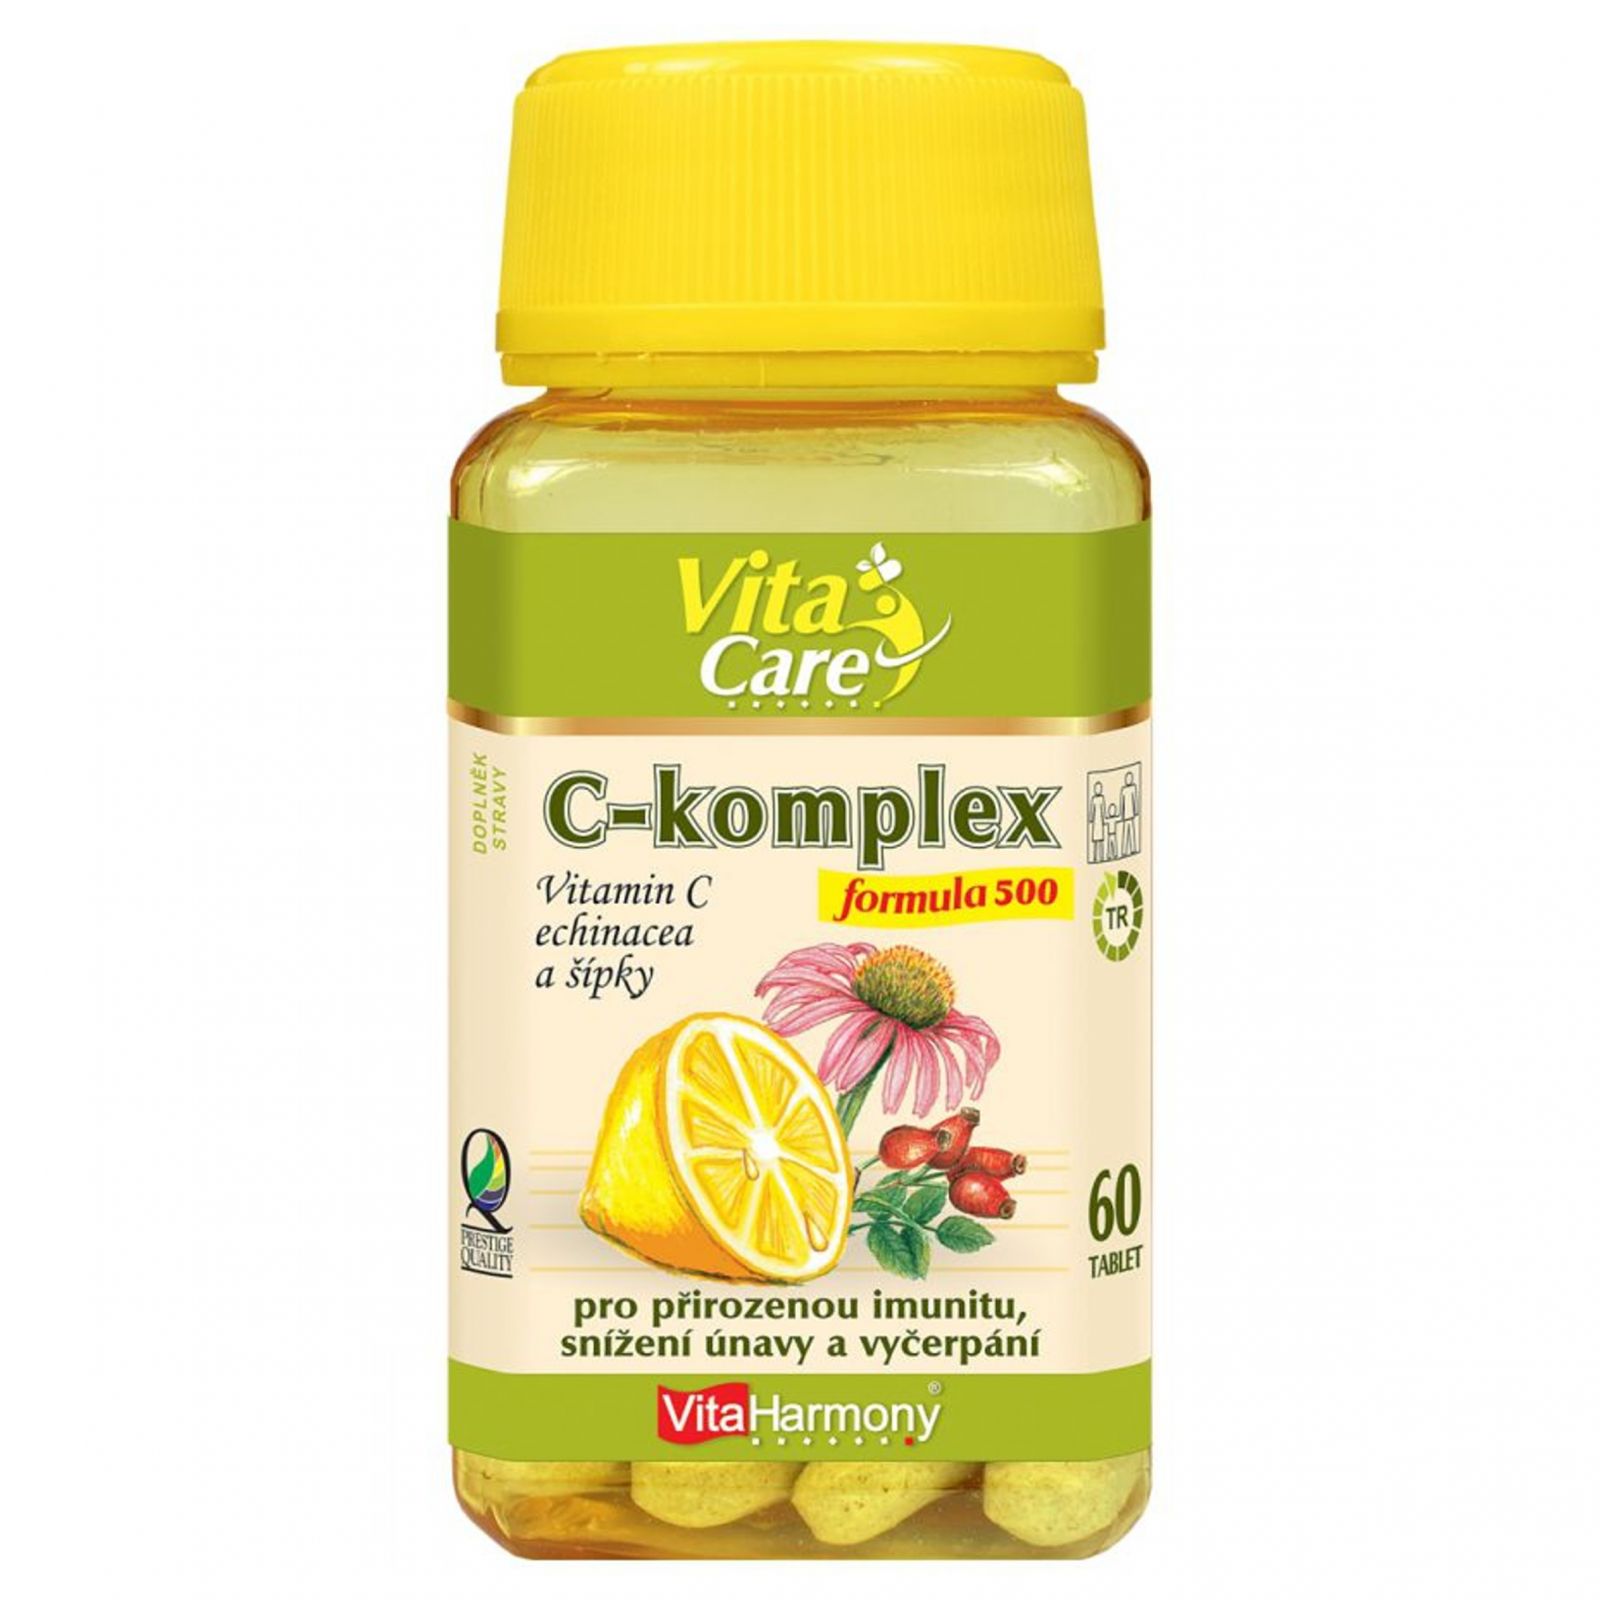 Микс витаминов. Витамин с 60 мг. Daily Mix витамины.